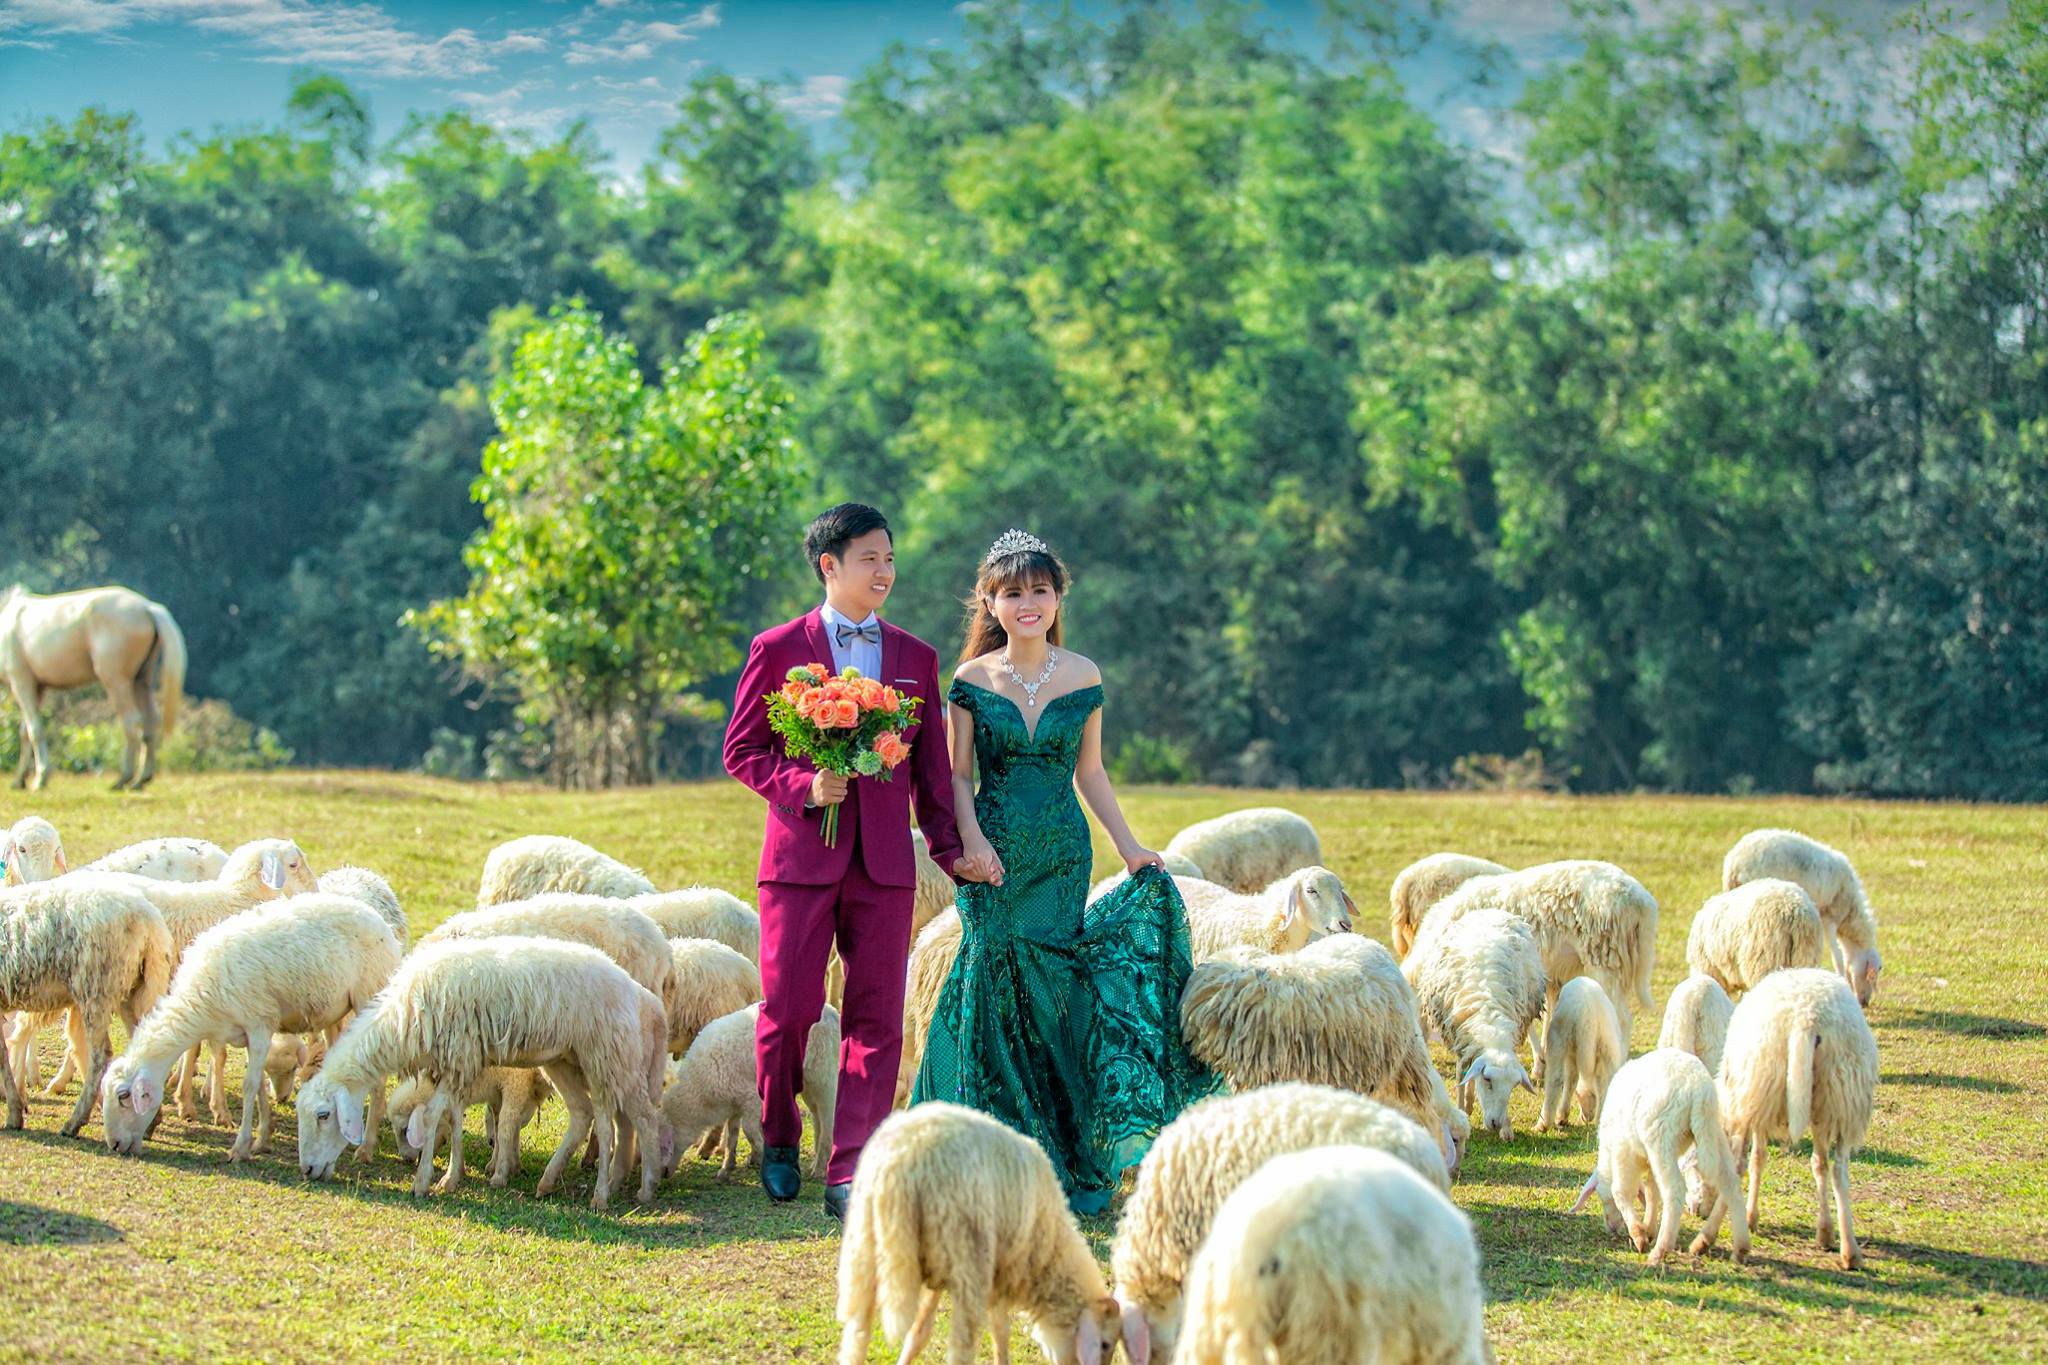 Hình cưới đẹp ở cánh đồng cừu